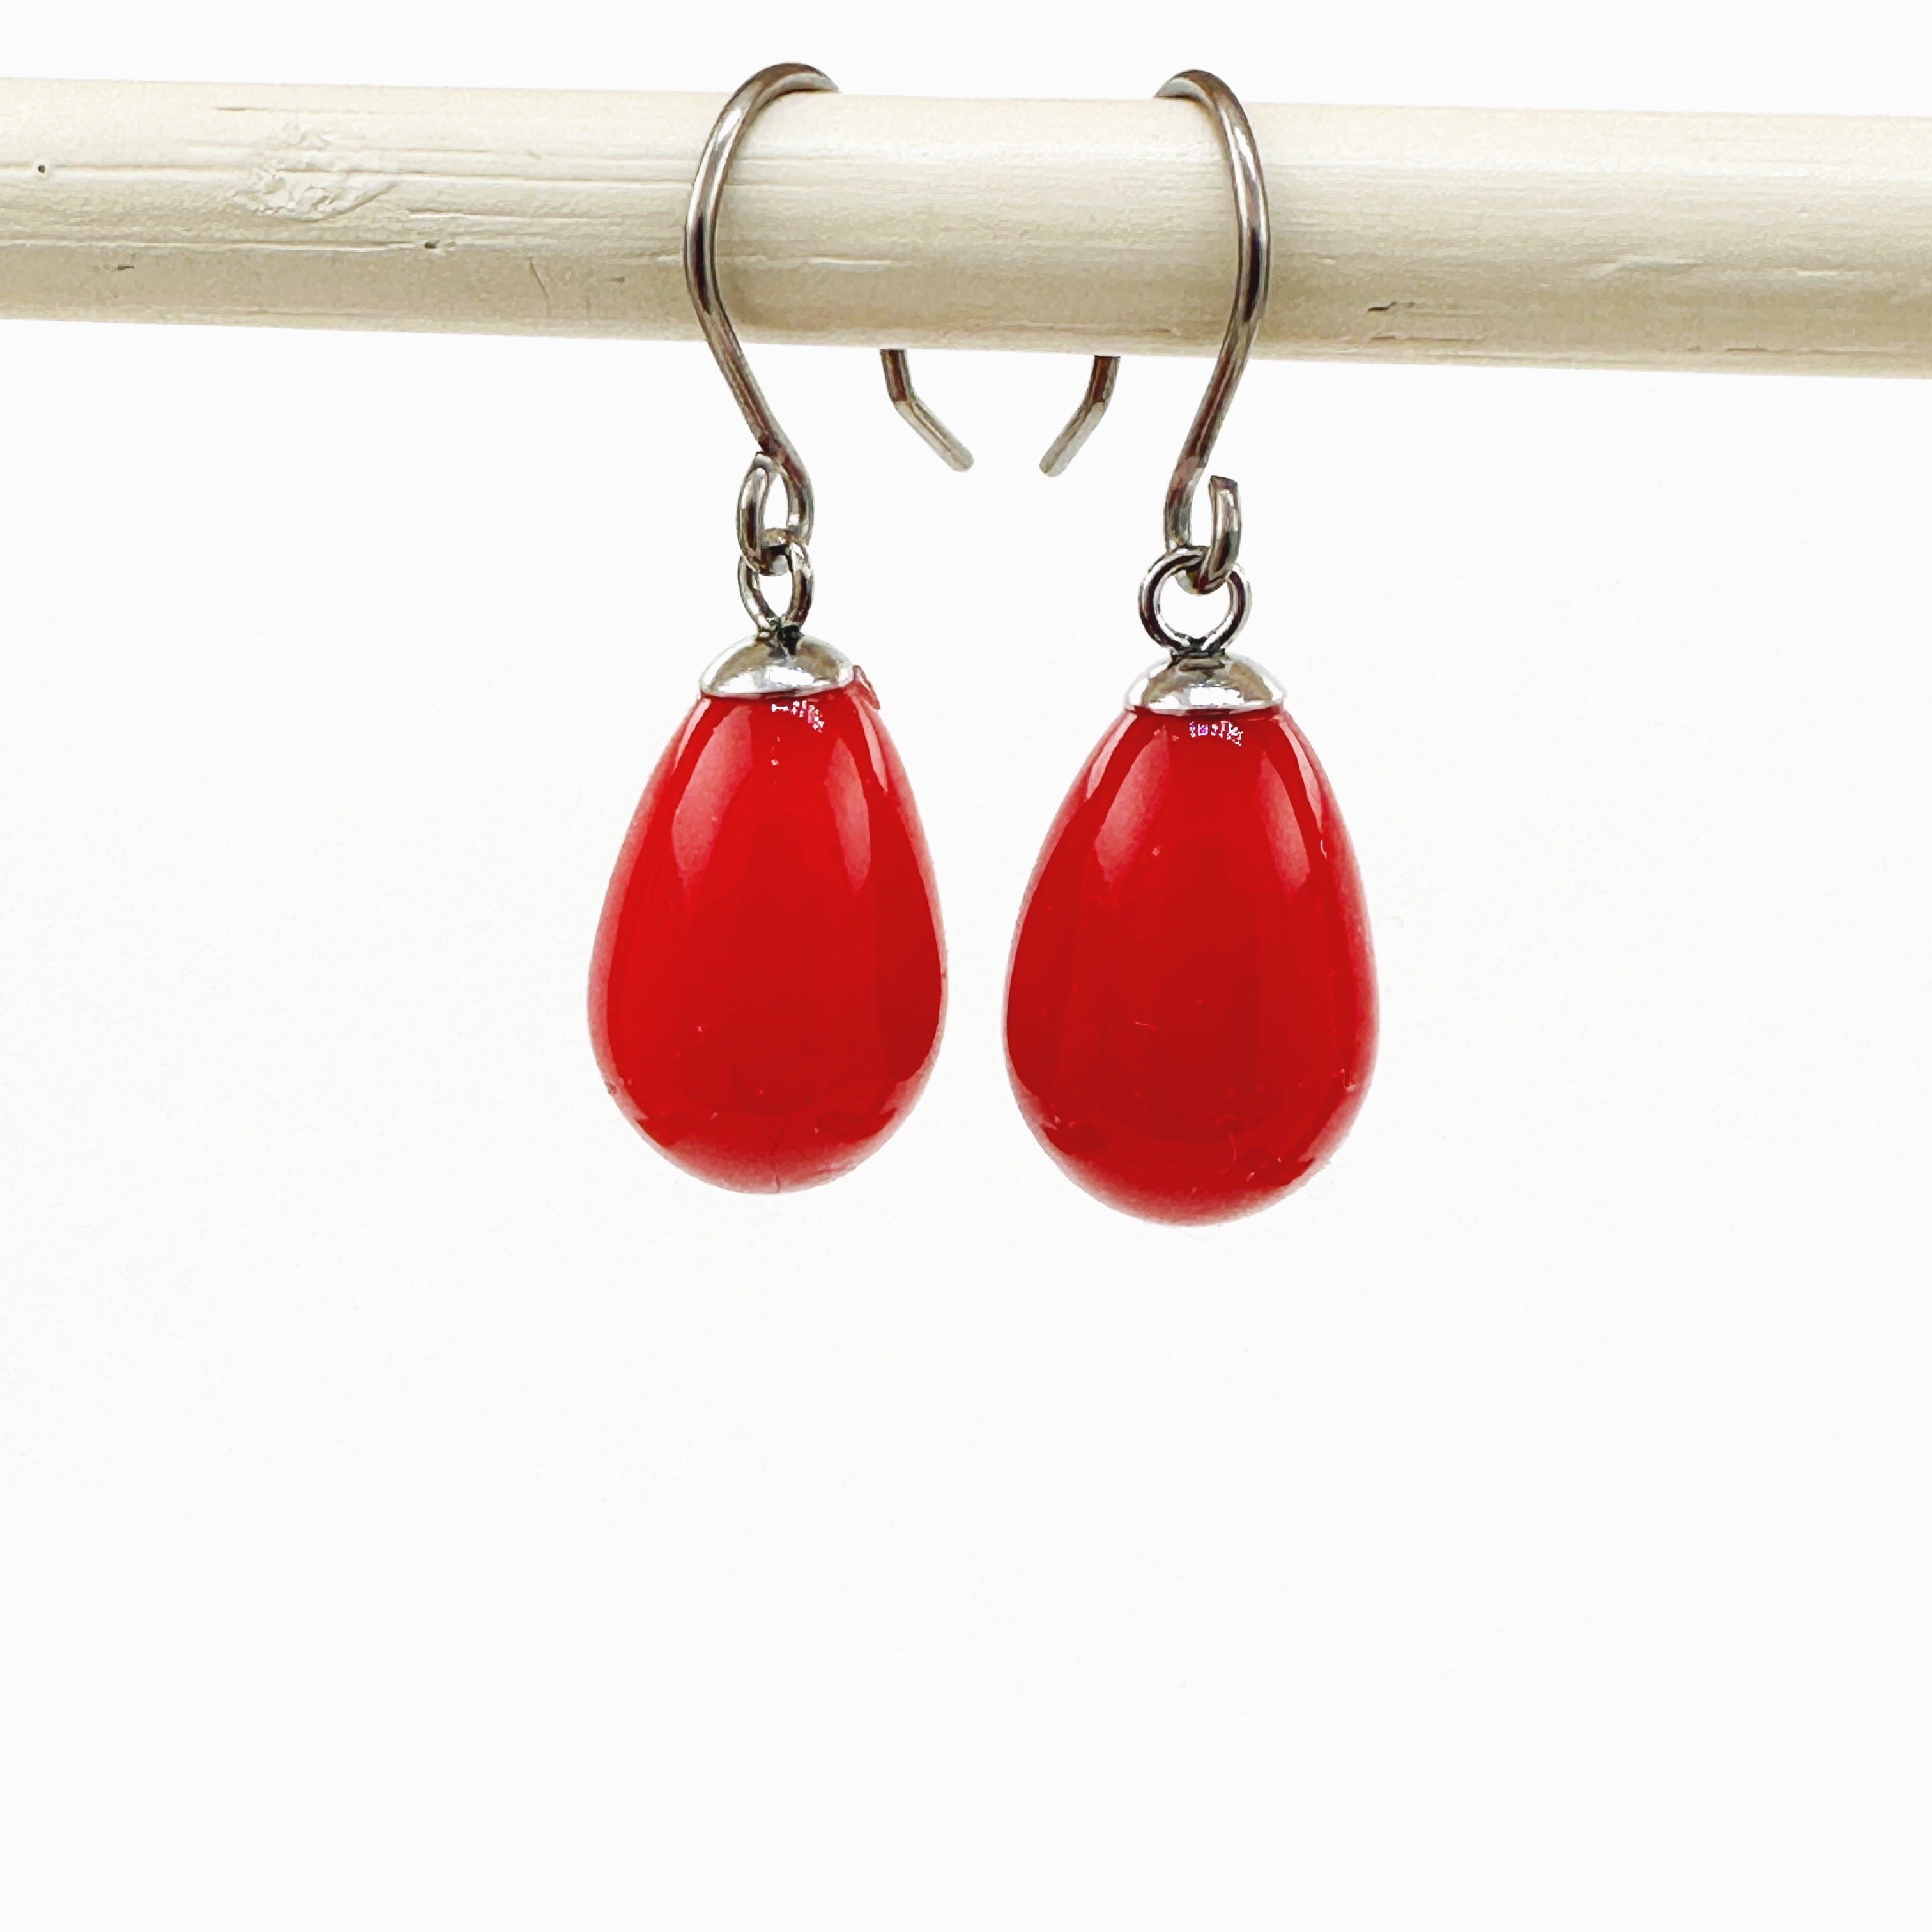 Red pearl earrings